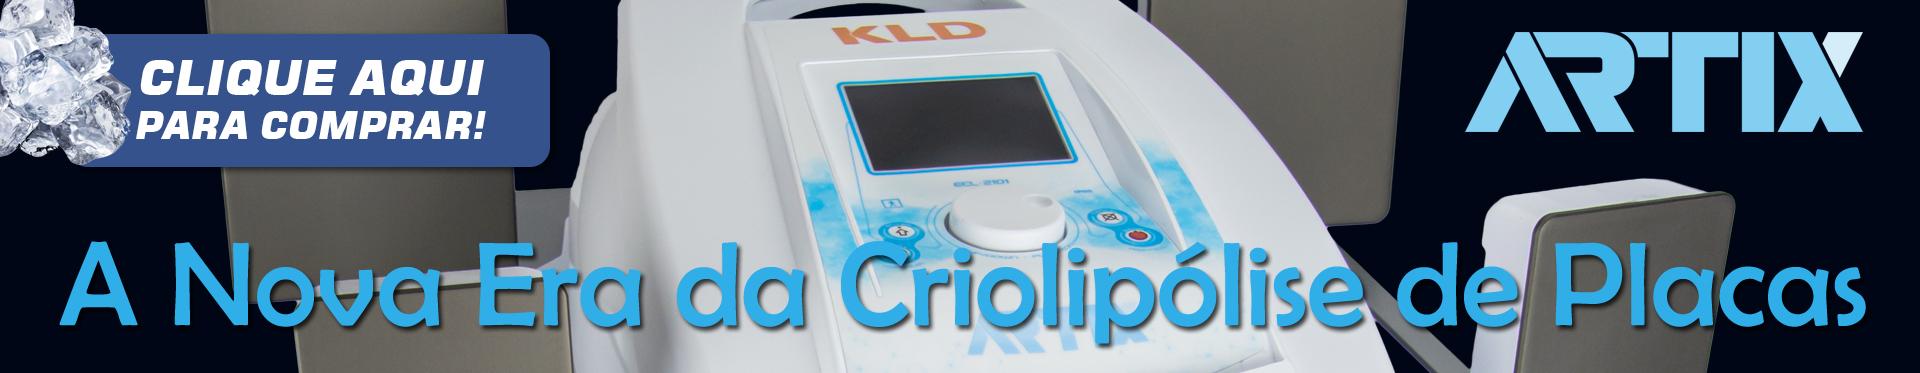 Artix KLD - Melhor aparelho de criolipolise de placas